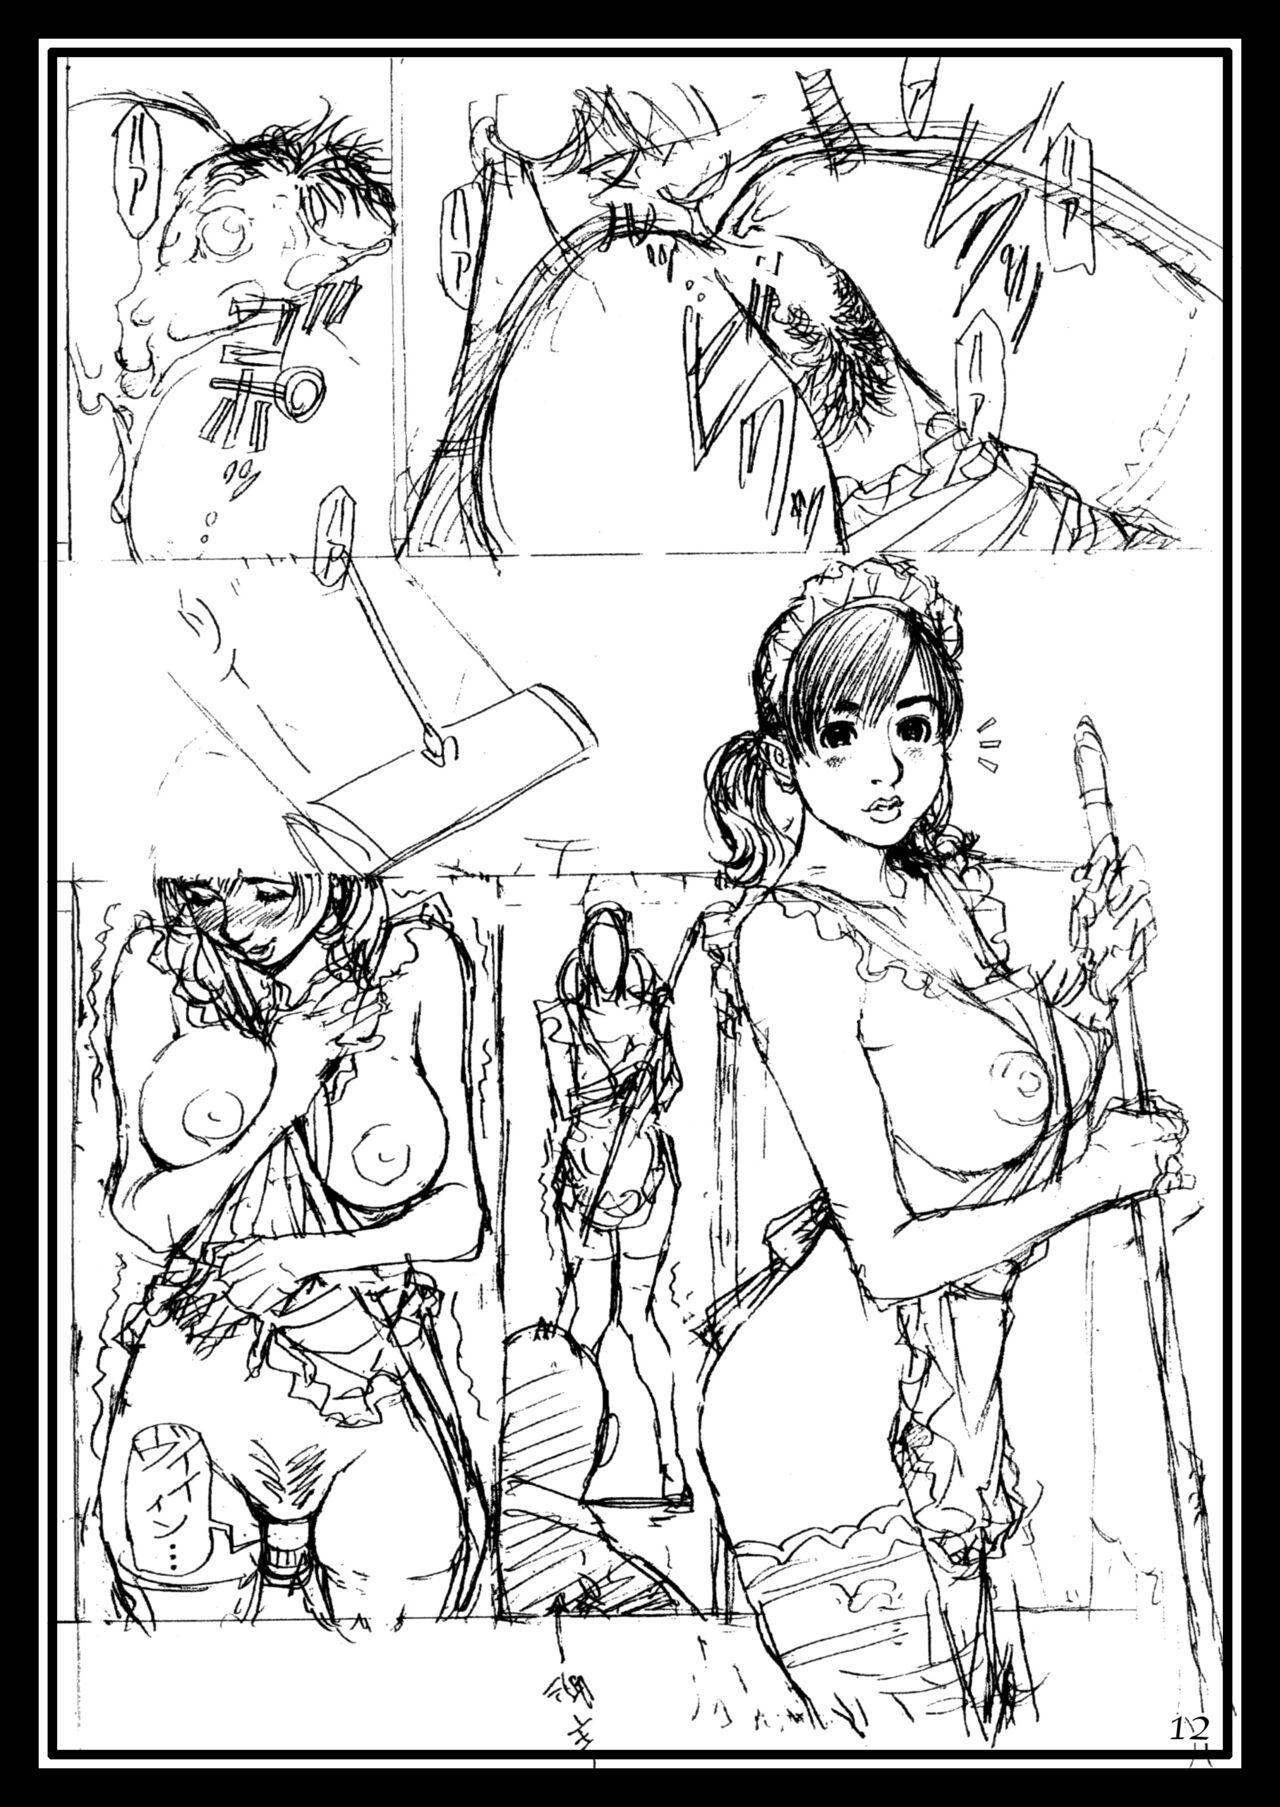 1080p Oomisoka! Izayoi Matsuri! Rough Gashuu in M-jo Senka EX - Original Small - Page 11